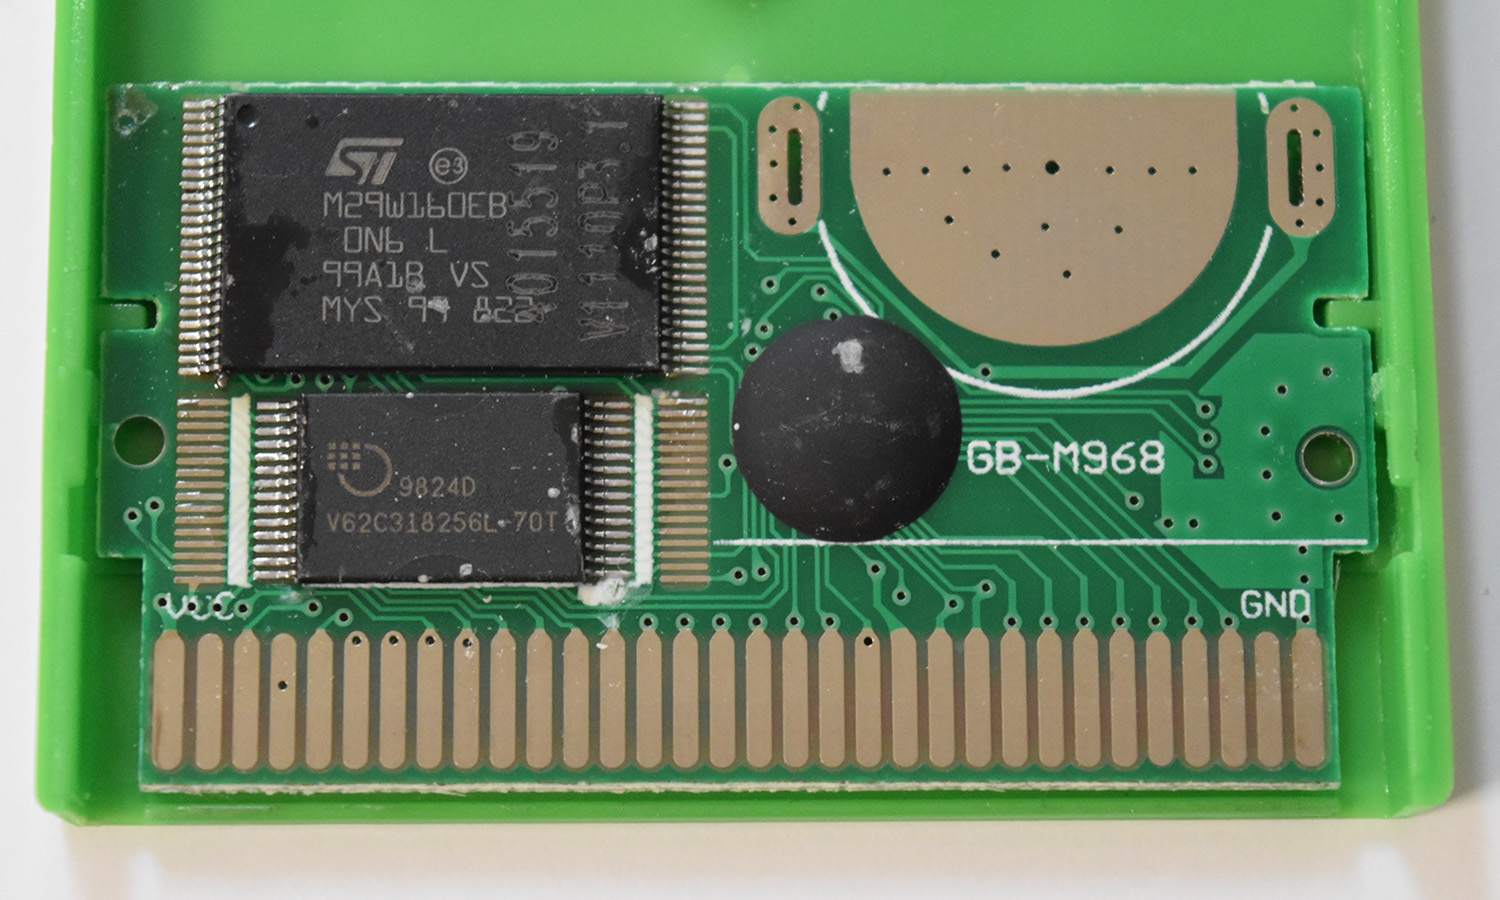 GB-M968 - M29W160EB (Pokémon Green).jpg